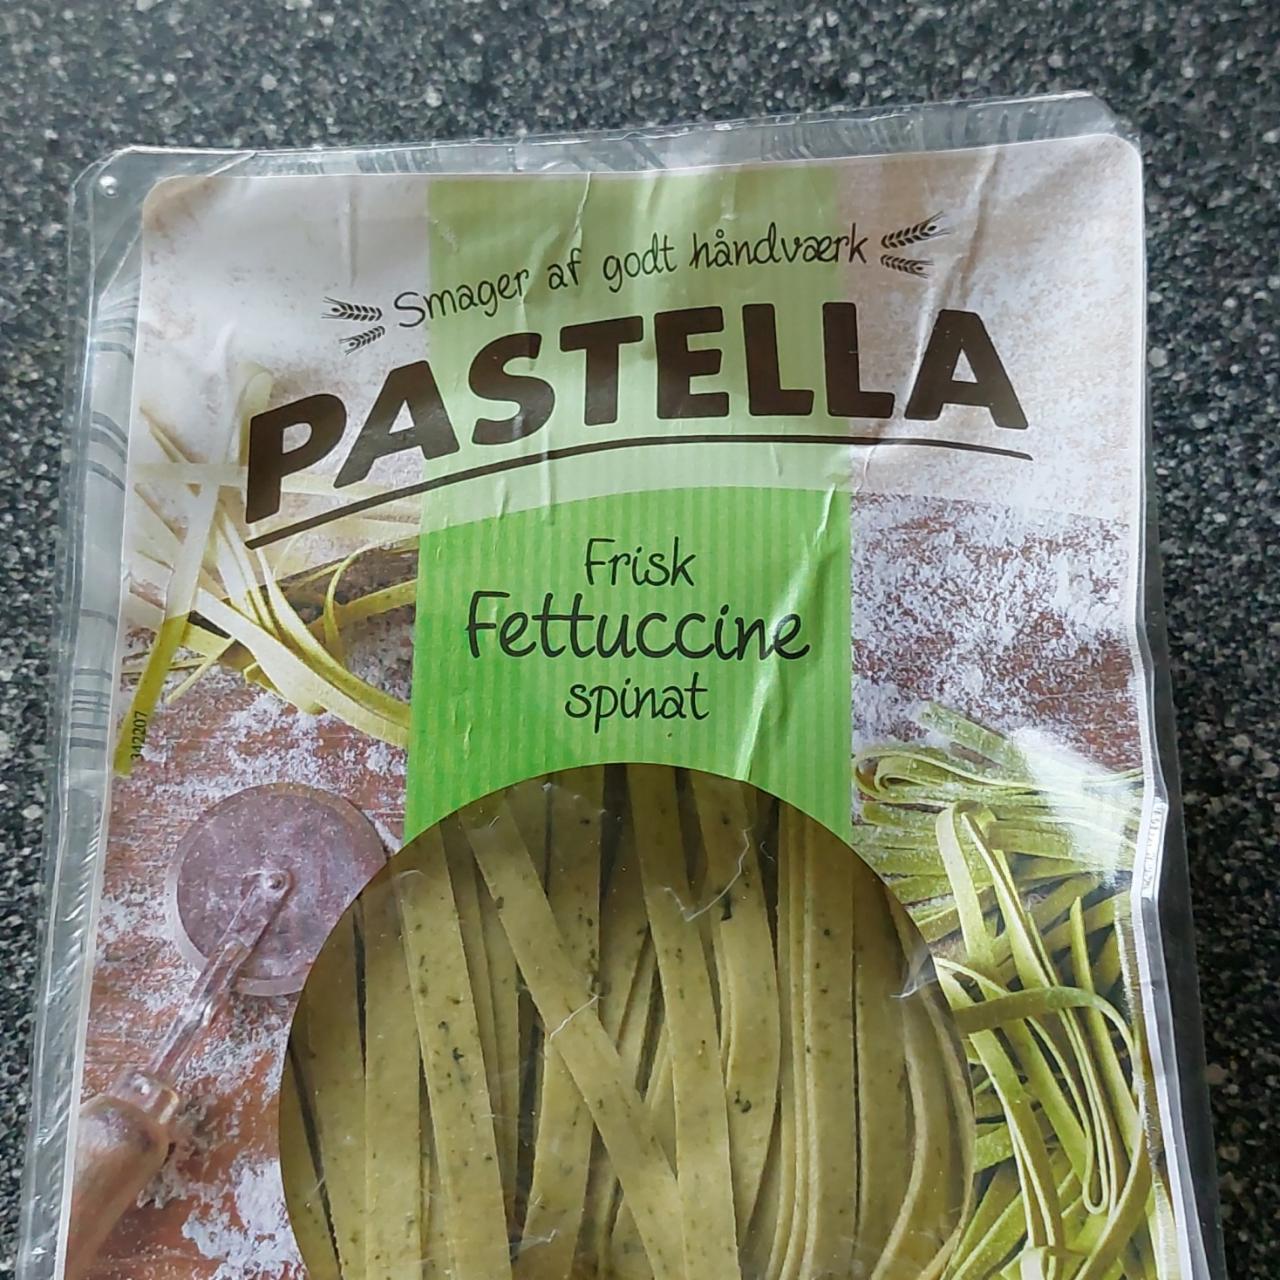 Фото - феттучини со шпинатом Pastella